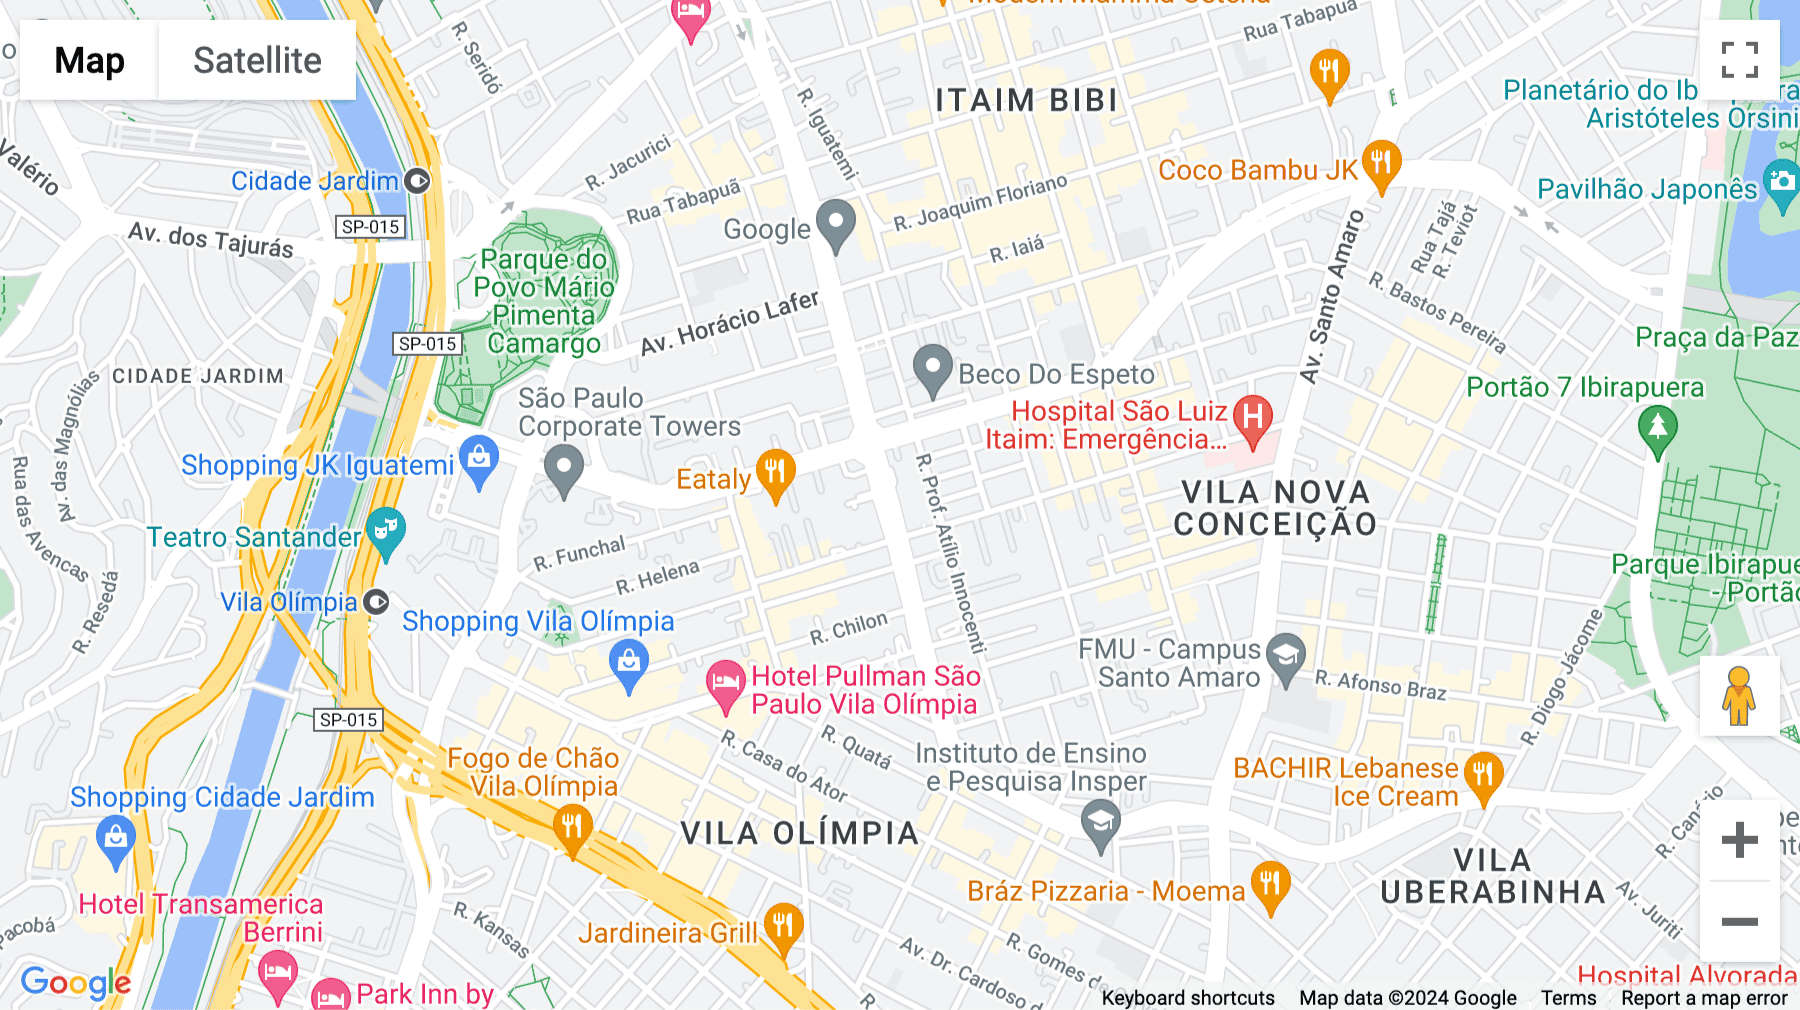 Click for interative map of Avenida Faria Lima 4055, Sao Paulo